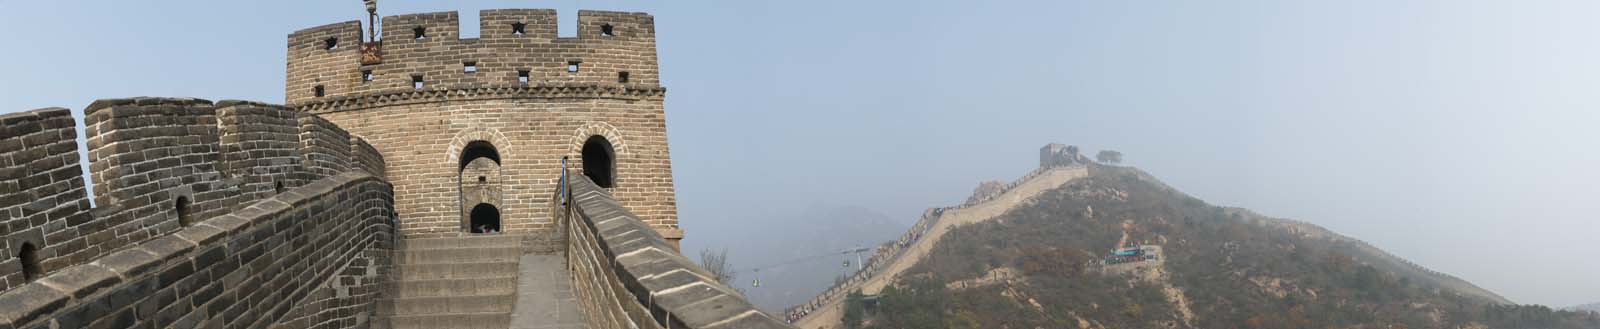 fotografia, materiale, libero il panorama, dipinga, fotografia di scorta,Grande Muraglia Panorama, Muri, Lou arrocca, Xiongnu, Imperatore Guangwu di Han